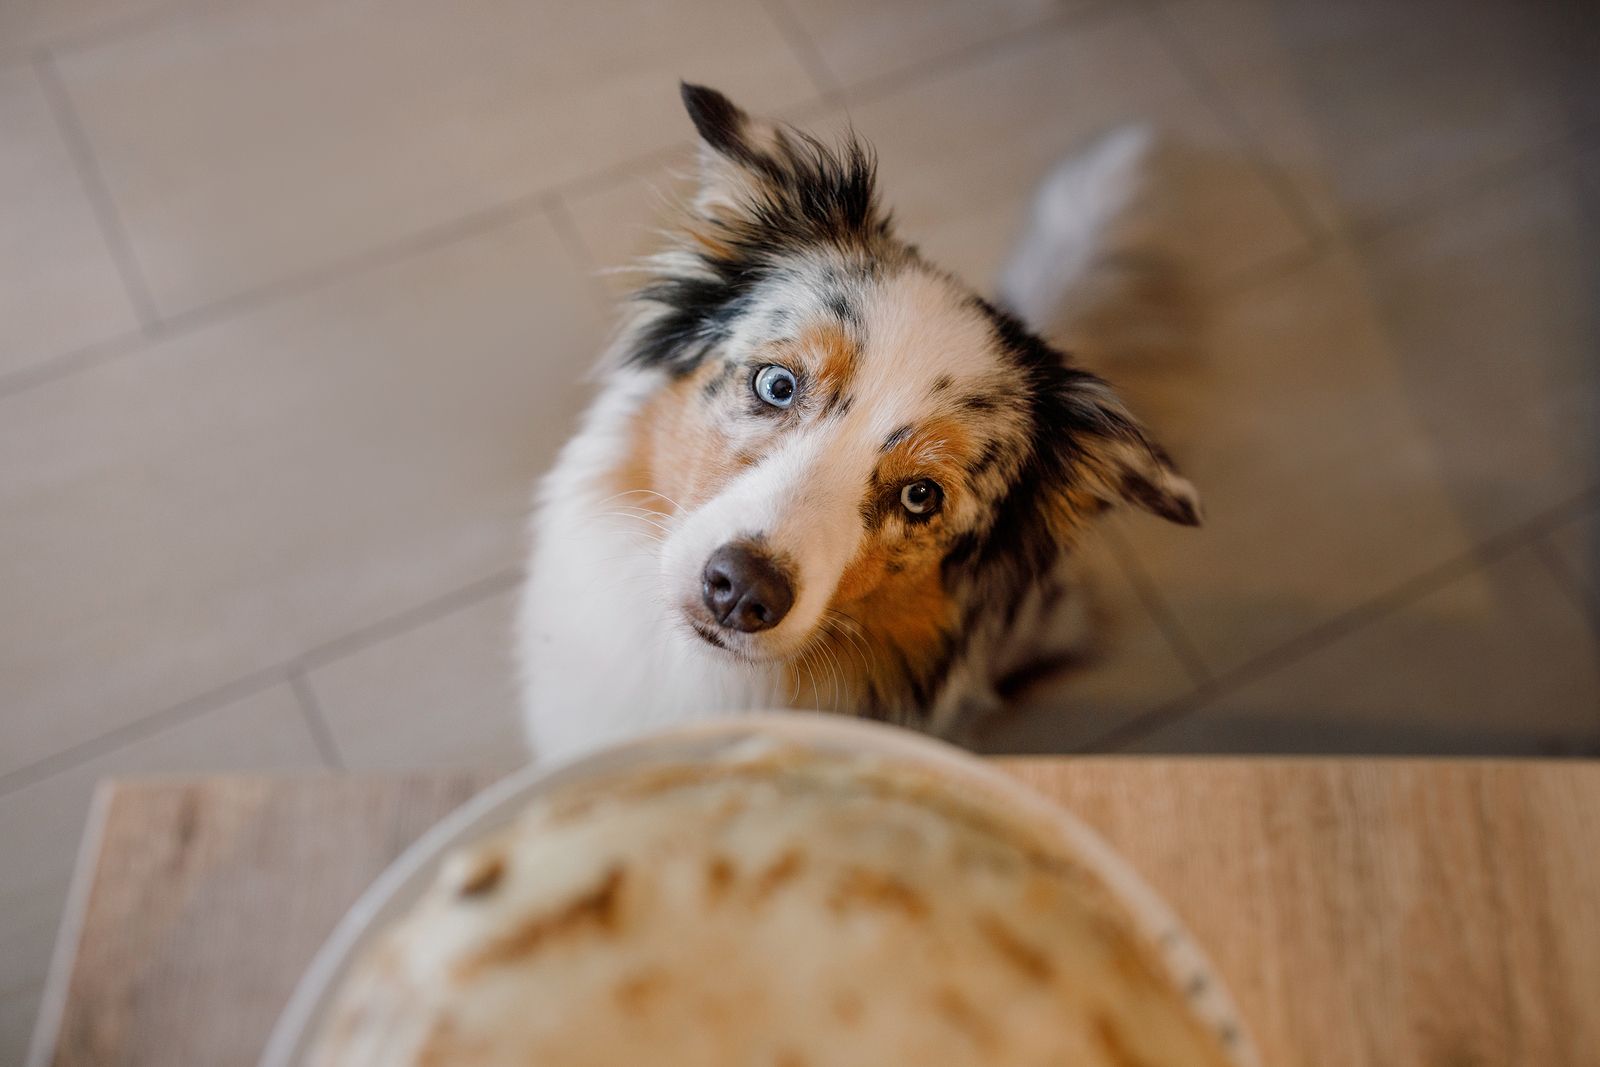 Cómo conseguir que tu perro deje de pedirte comida